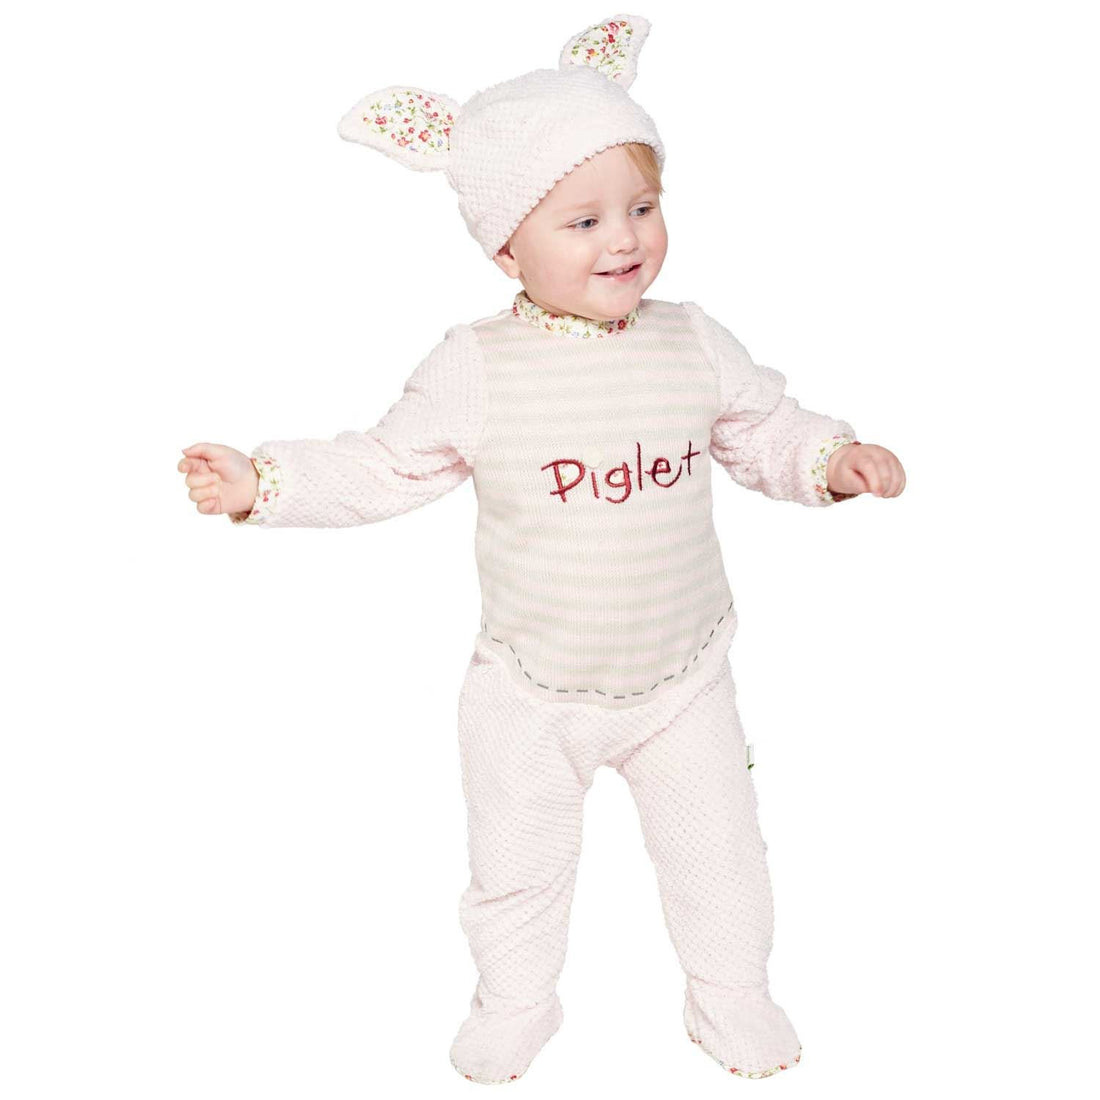 Piglet Vintage Romper Costume &amp; Hat Child (18-24 months)